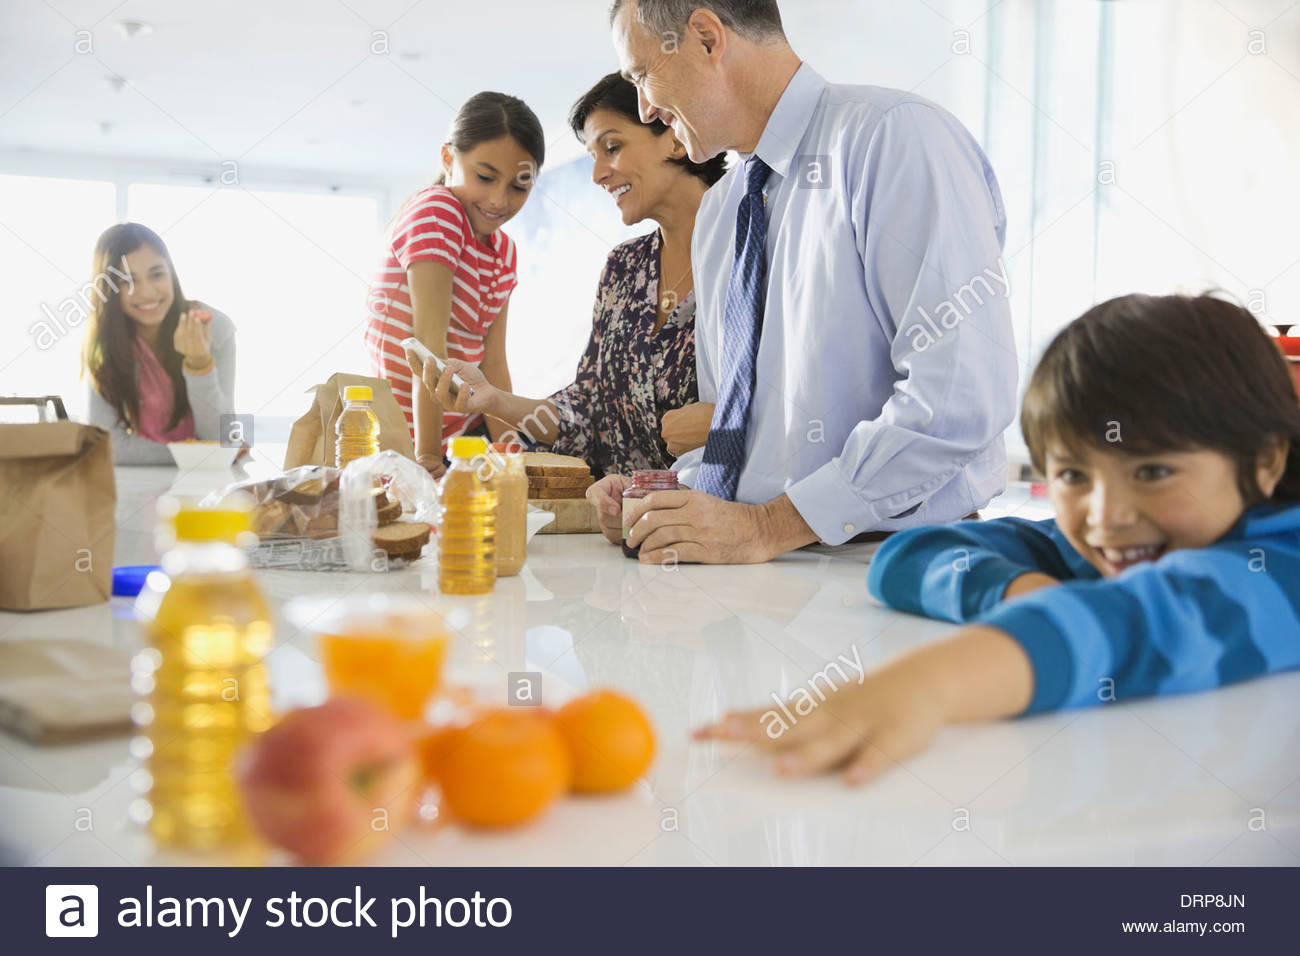 Family having breakfast at home Stock Photo